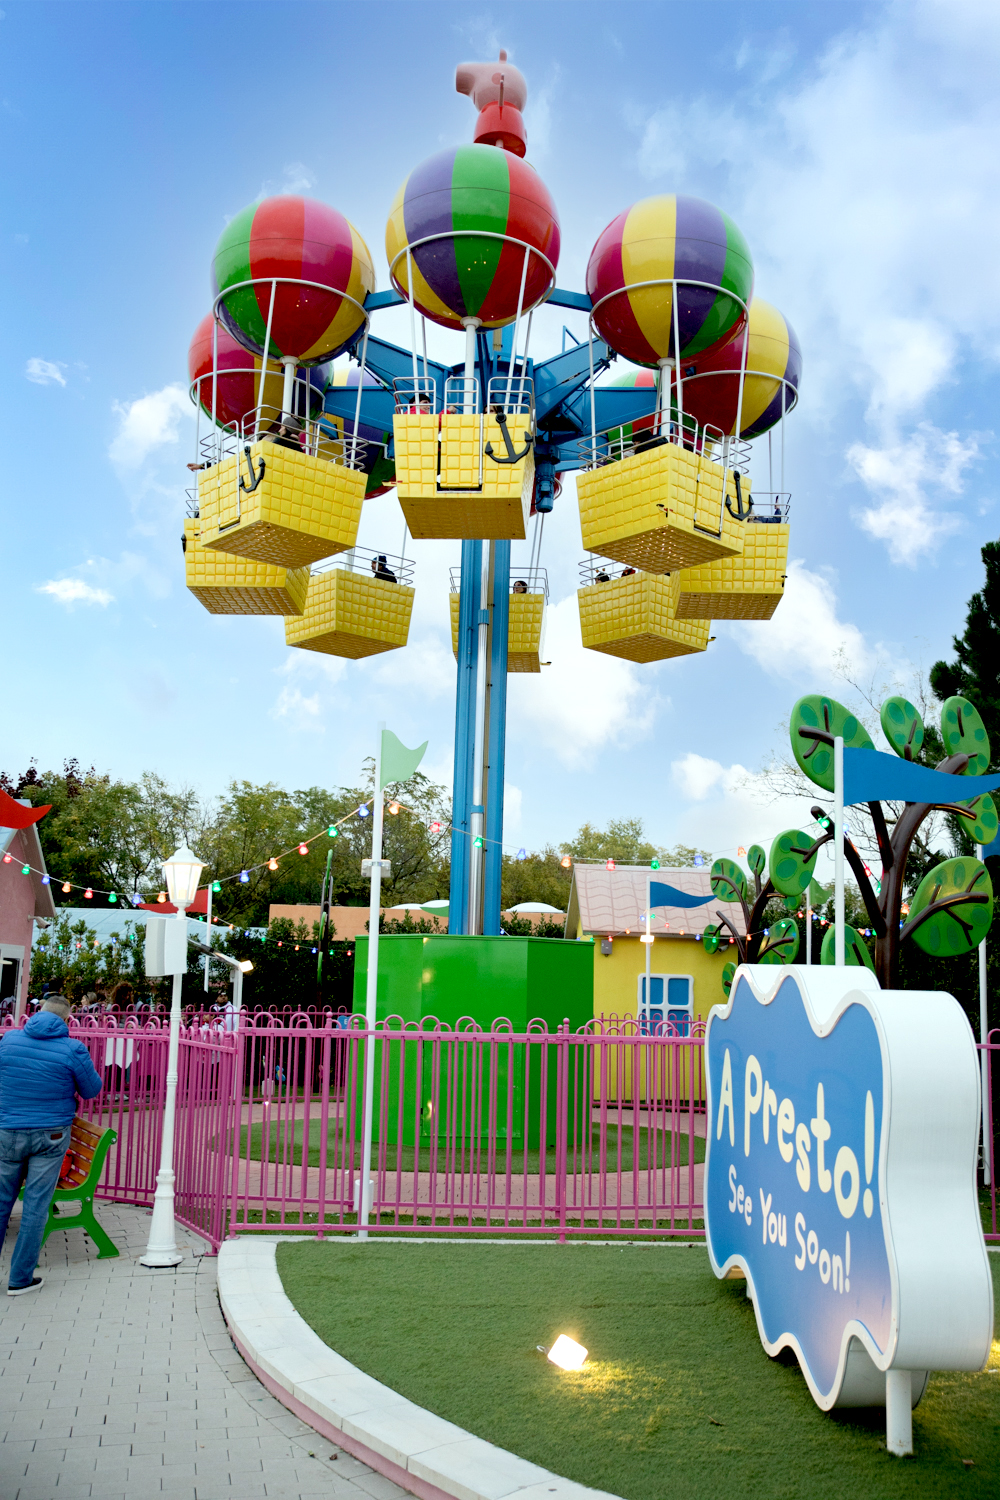 Gardaland Park - Peppa Pig Land - Heißluftballons von Peppa Pig